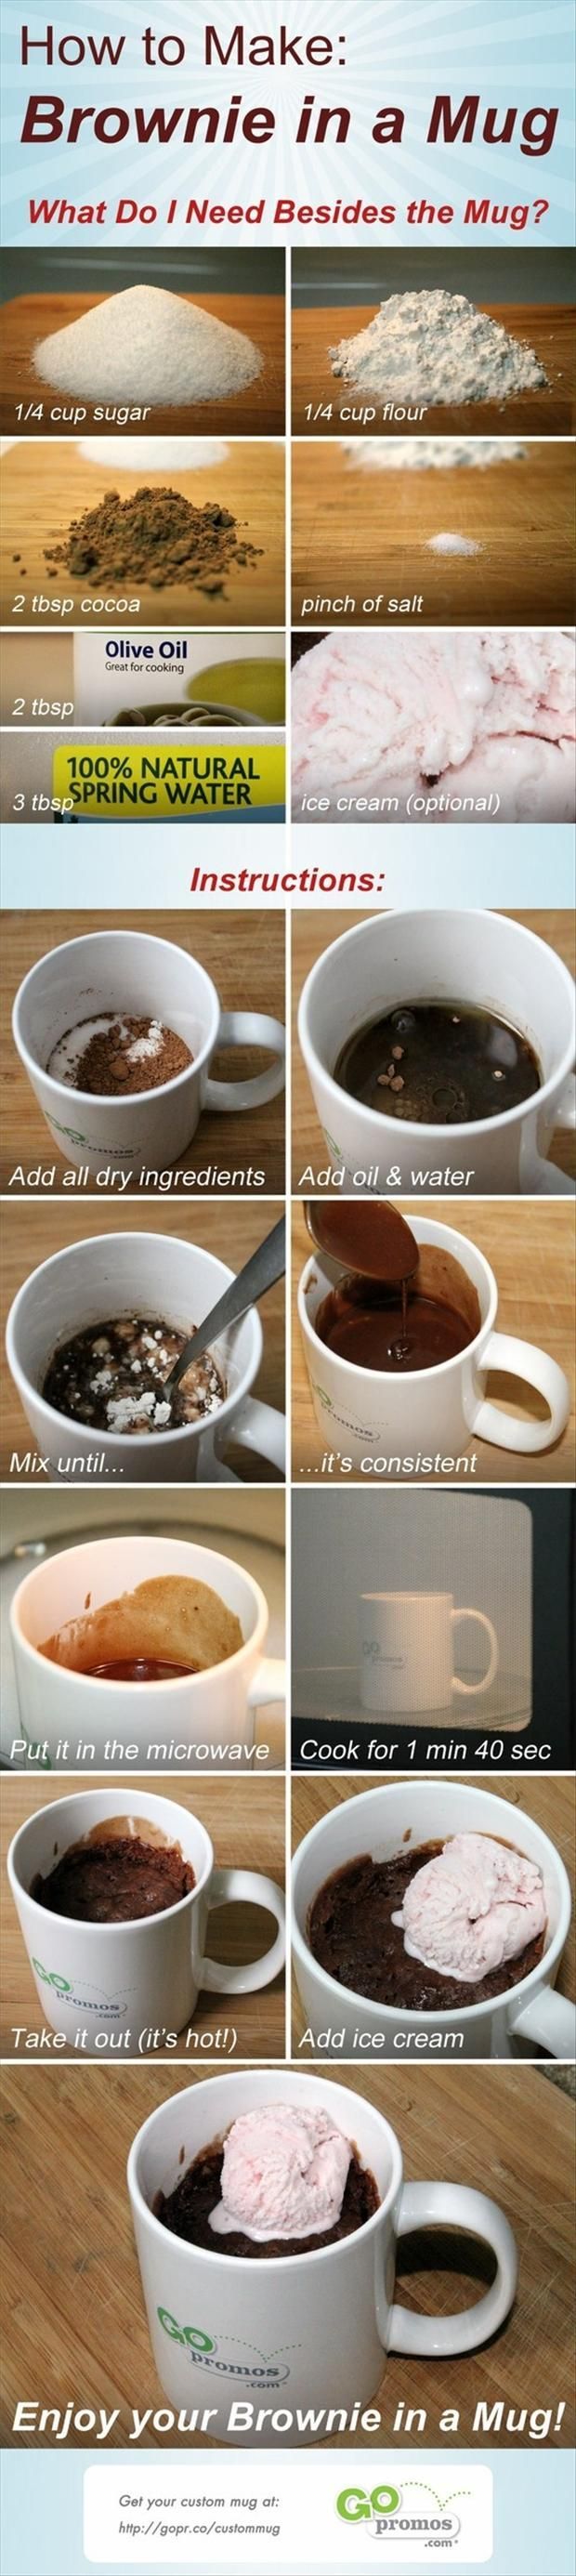 how-to-make-brownies-in-a-coffee-mug.jpg 620×2,772 pixels